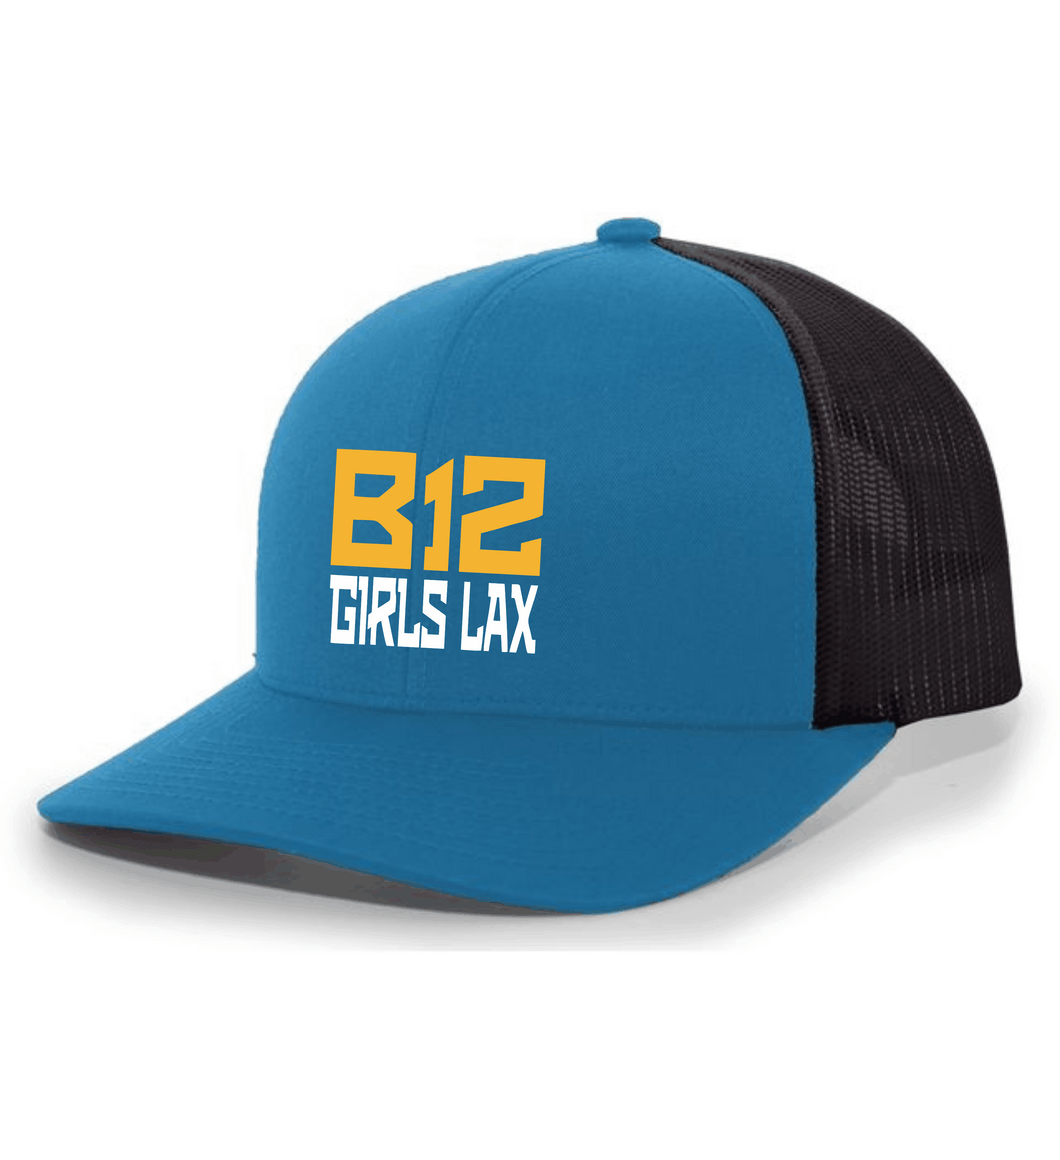 B12-LAX-926-4 - Pacific Trucker Snapback Hat - B12 Girls LAX Stack Logo